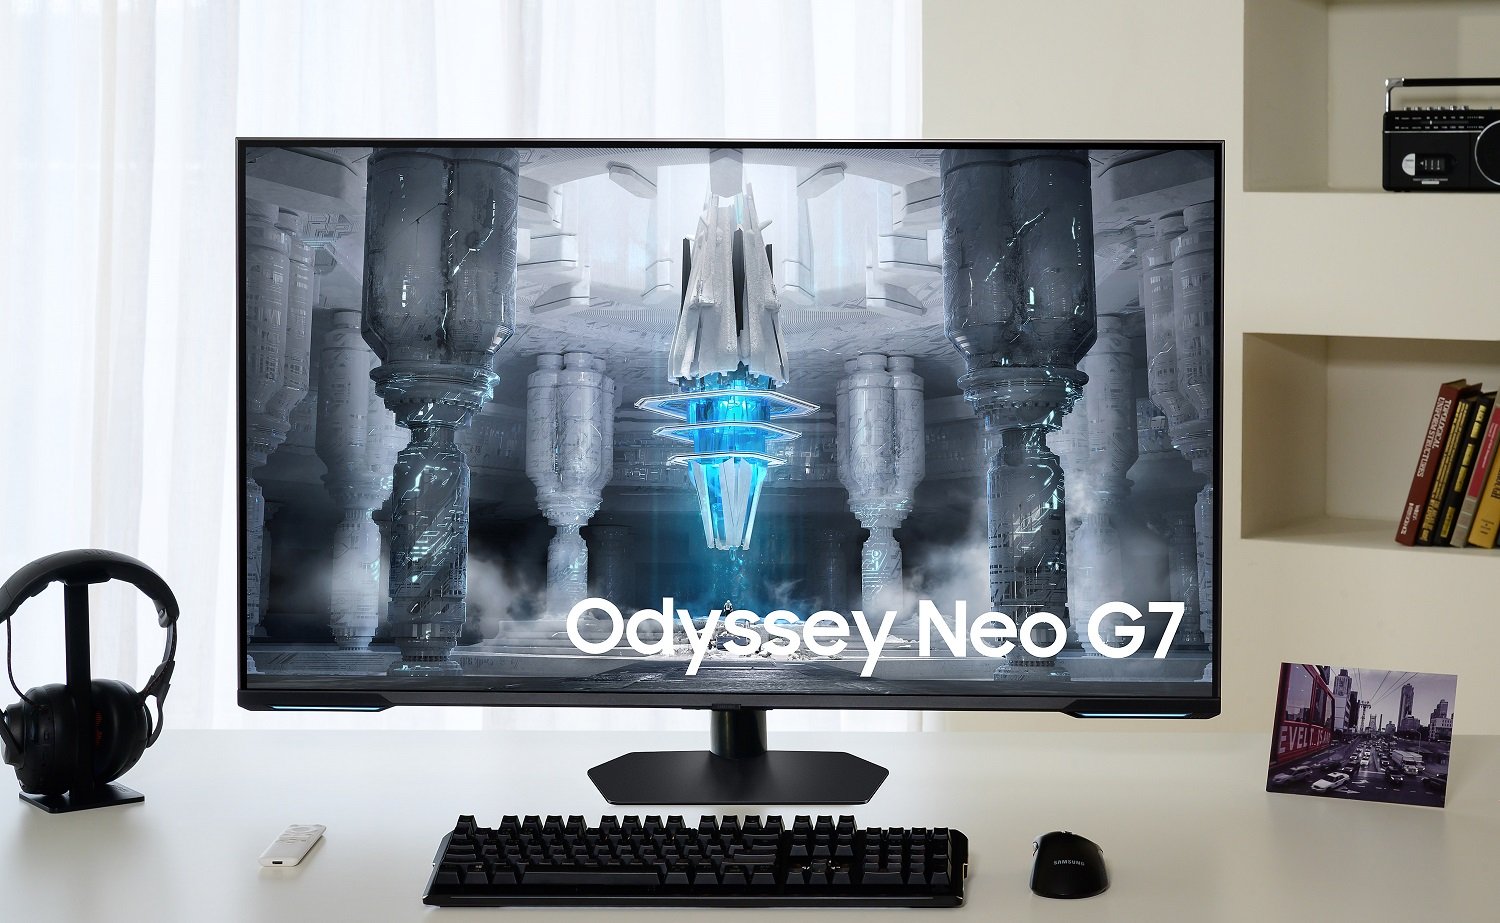 Odyssey Neo G7